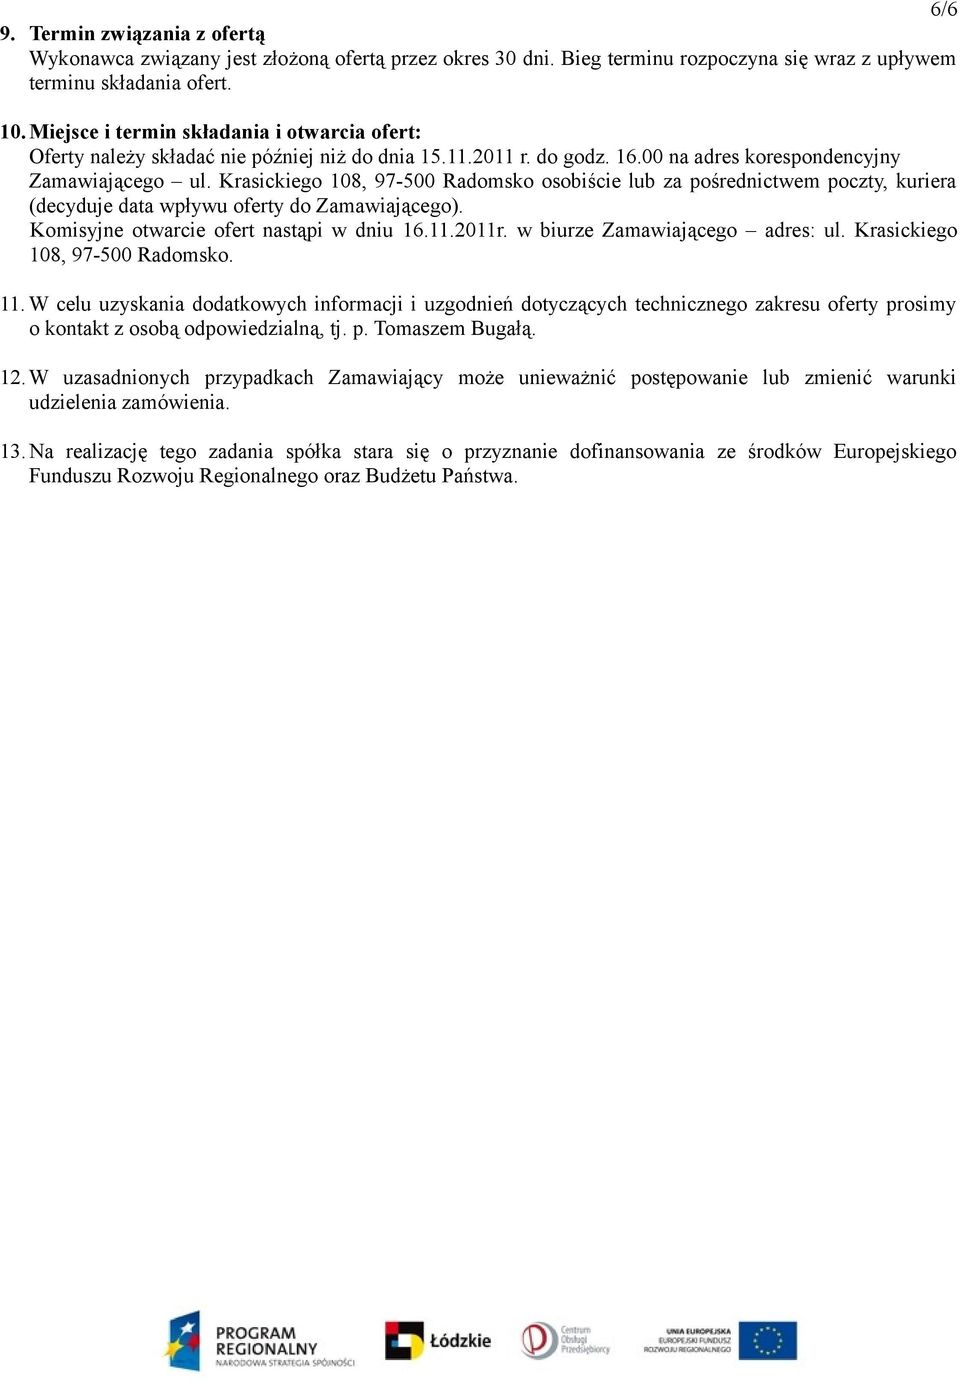 Krasickiego 108, 97-500 Radomsko osobiście lub za pośrednictwem poczty, kuriera (decyduje data wpływu oferty do Zamawiającego). Komisyjne otwarcie ofert nastąpi w dniu 16.11.2011r.